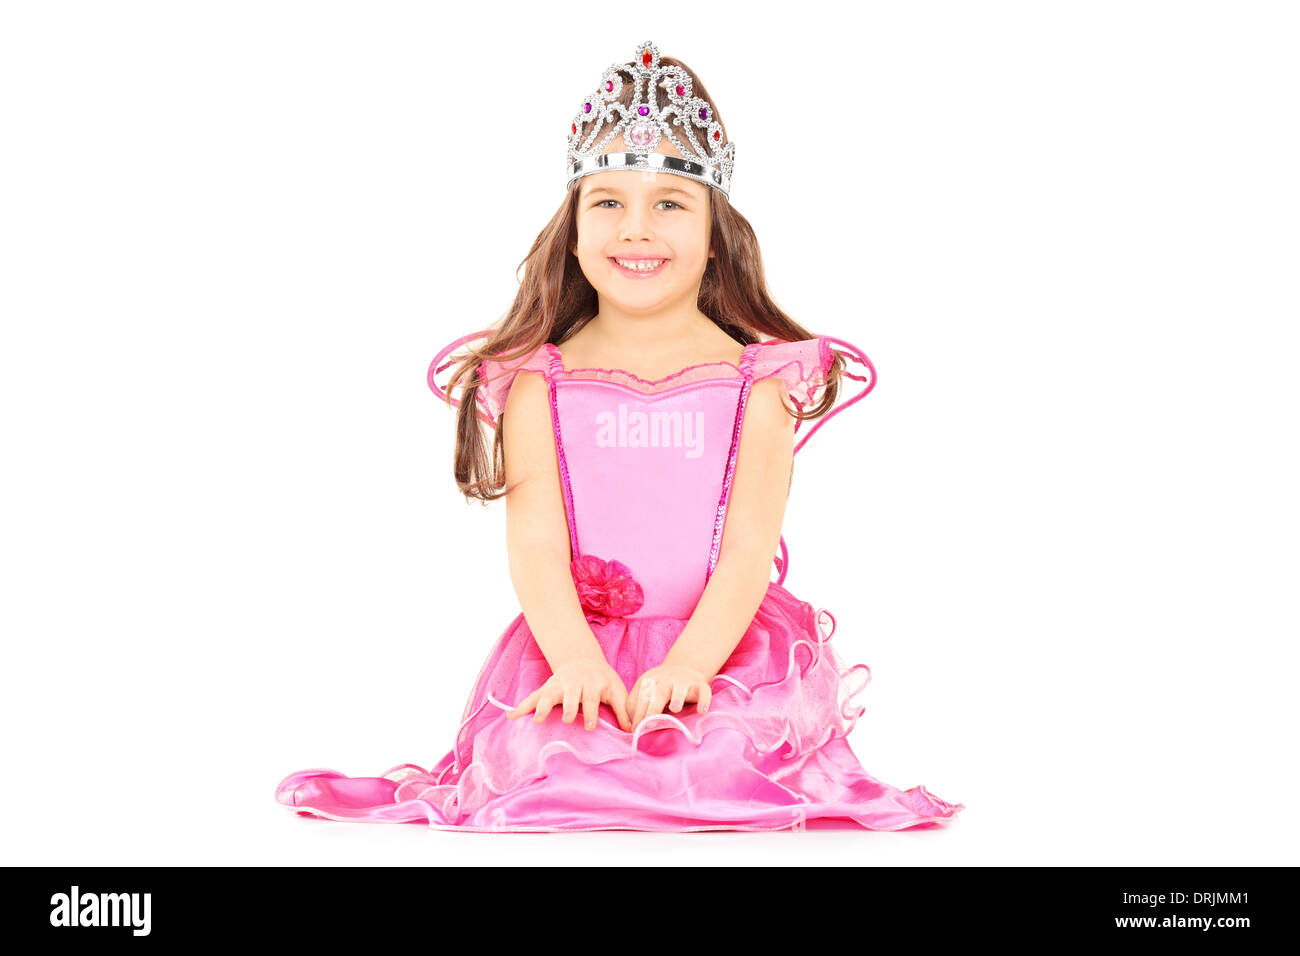 Carino bambina vestito come la principessa che indossa una tiara Foto Stock